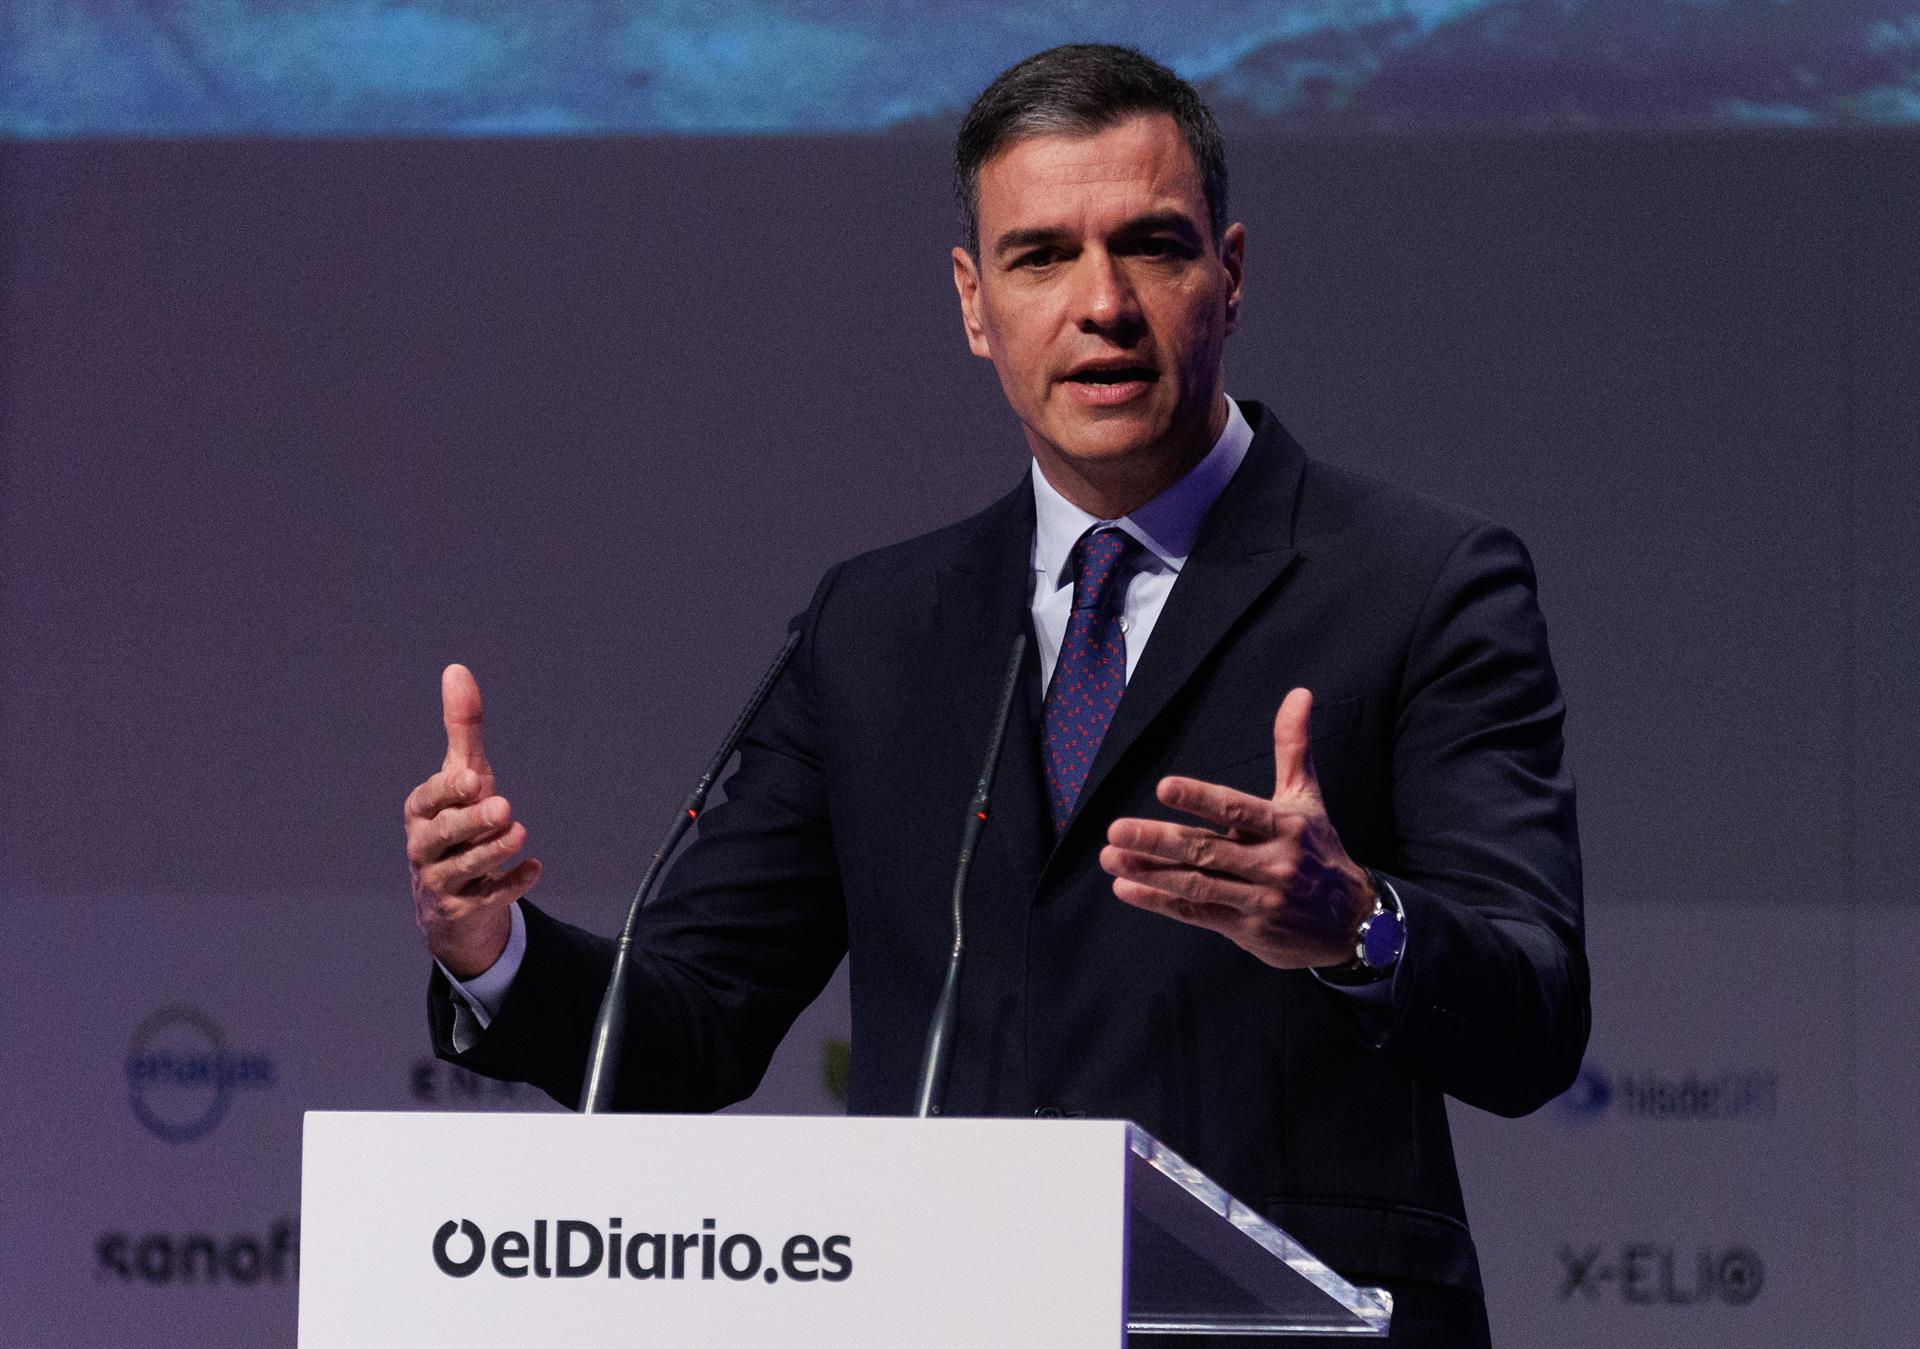 ¿Puede España ir "como una moto" con la eurozona en recesión?